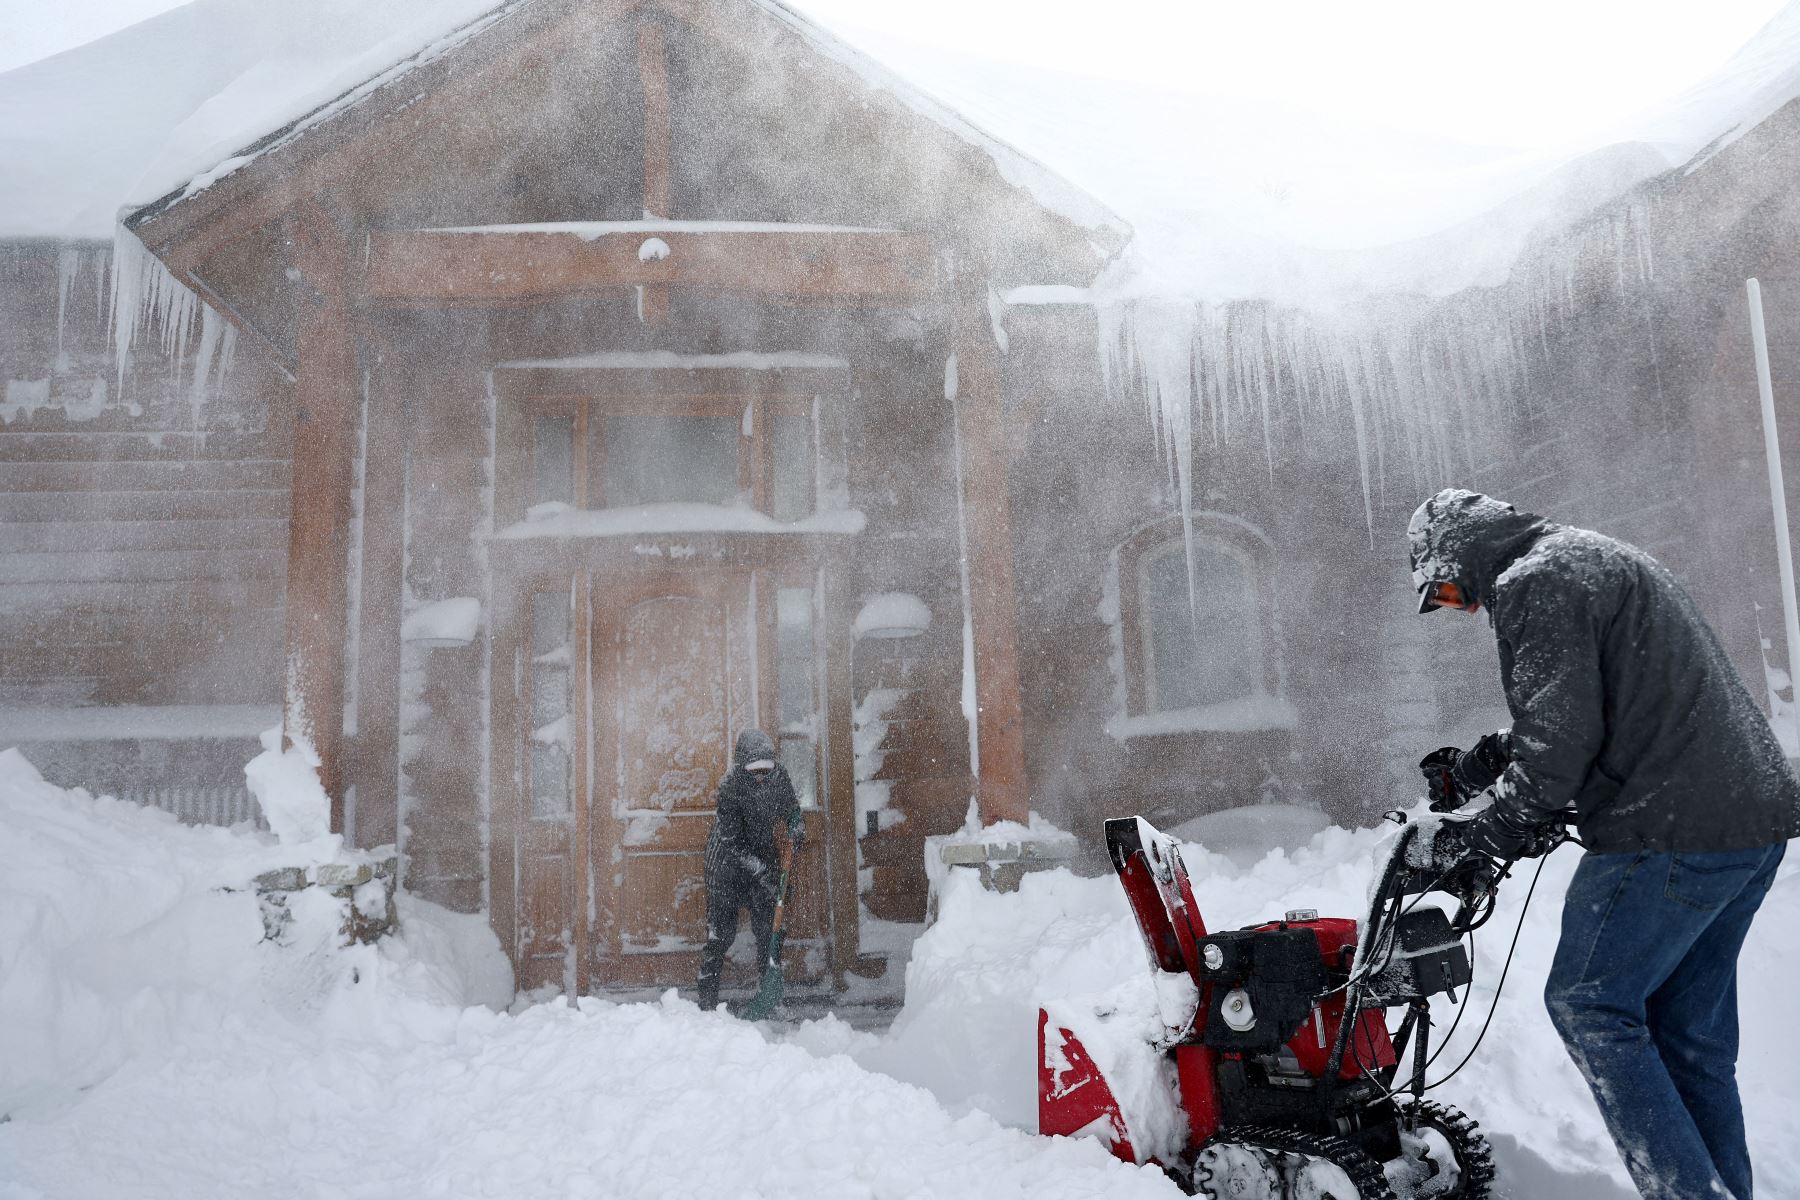 Los residentes limpian la nieve frente a su casa en Donner Pass Road durante una poderosa tormenta invernal de varios días en las montañas de Sierra Nevada, que está aumentando la capa de nieve en California.
Foto: AFP